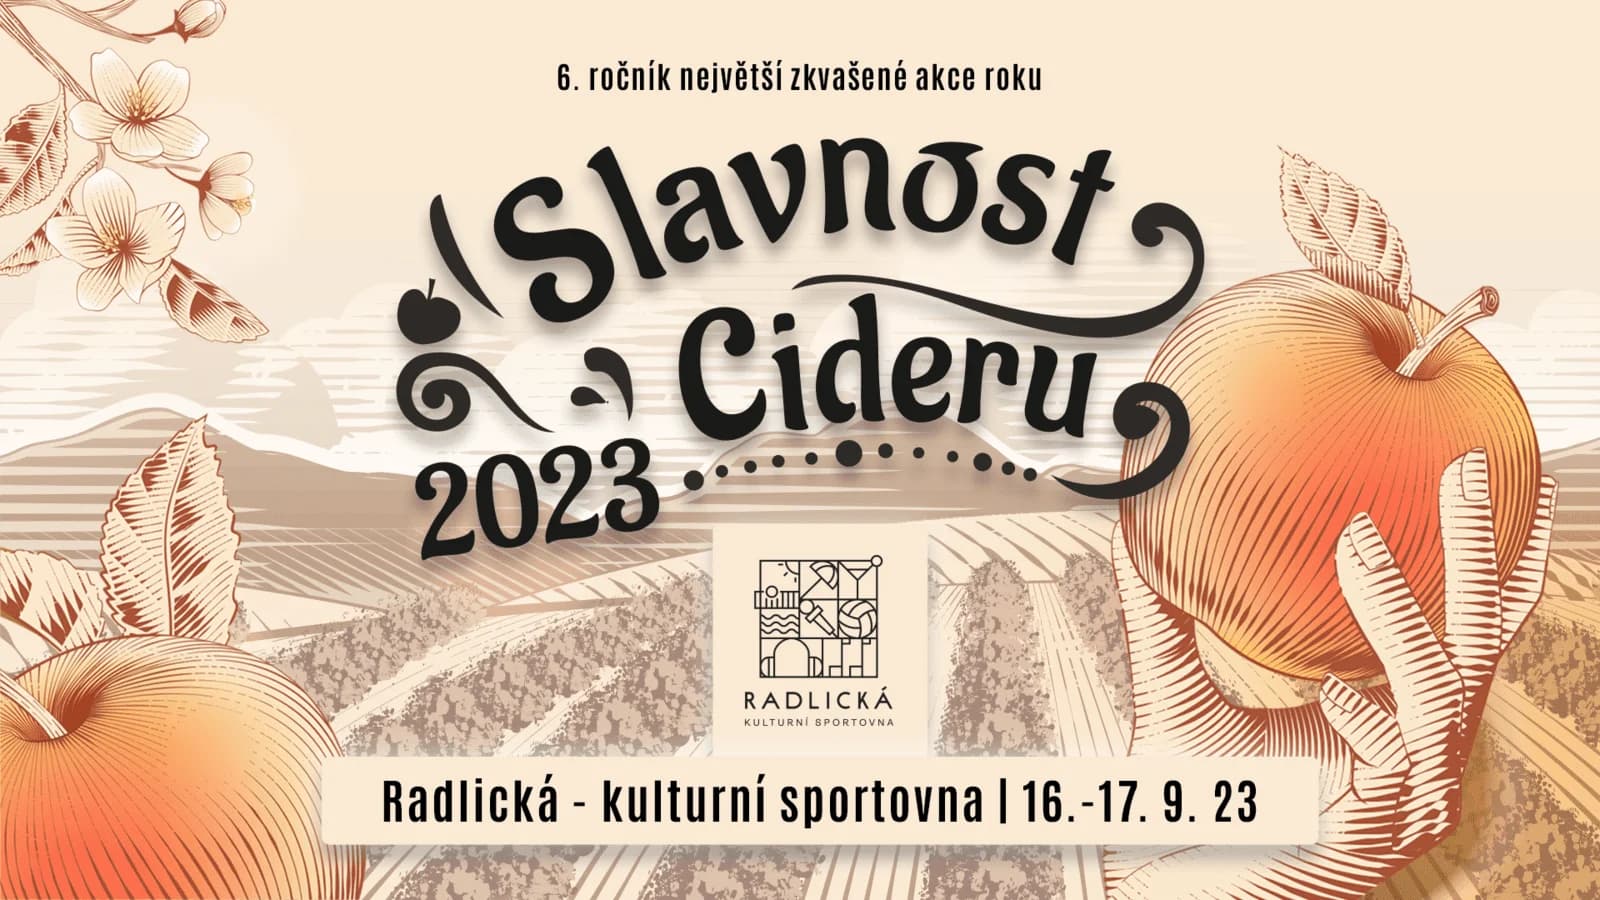 16 и 17 сентября в Праге пройдет самый масштабный фестиваль сидра в Чехии